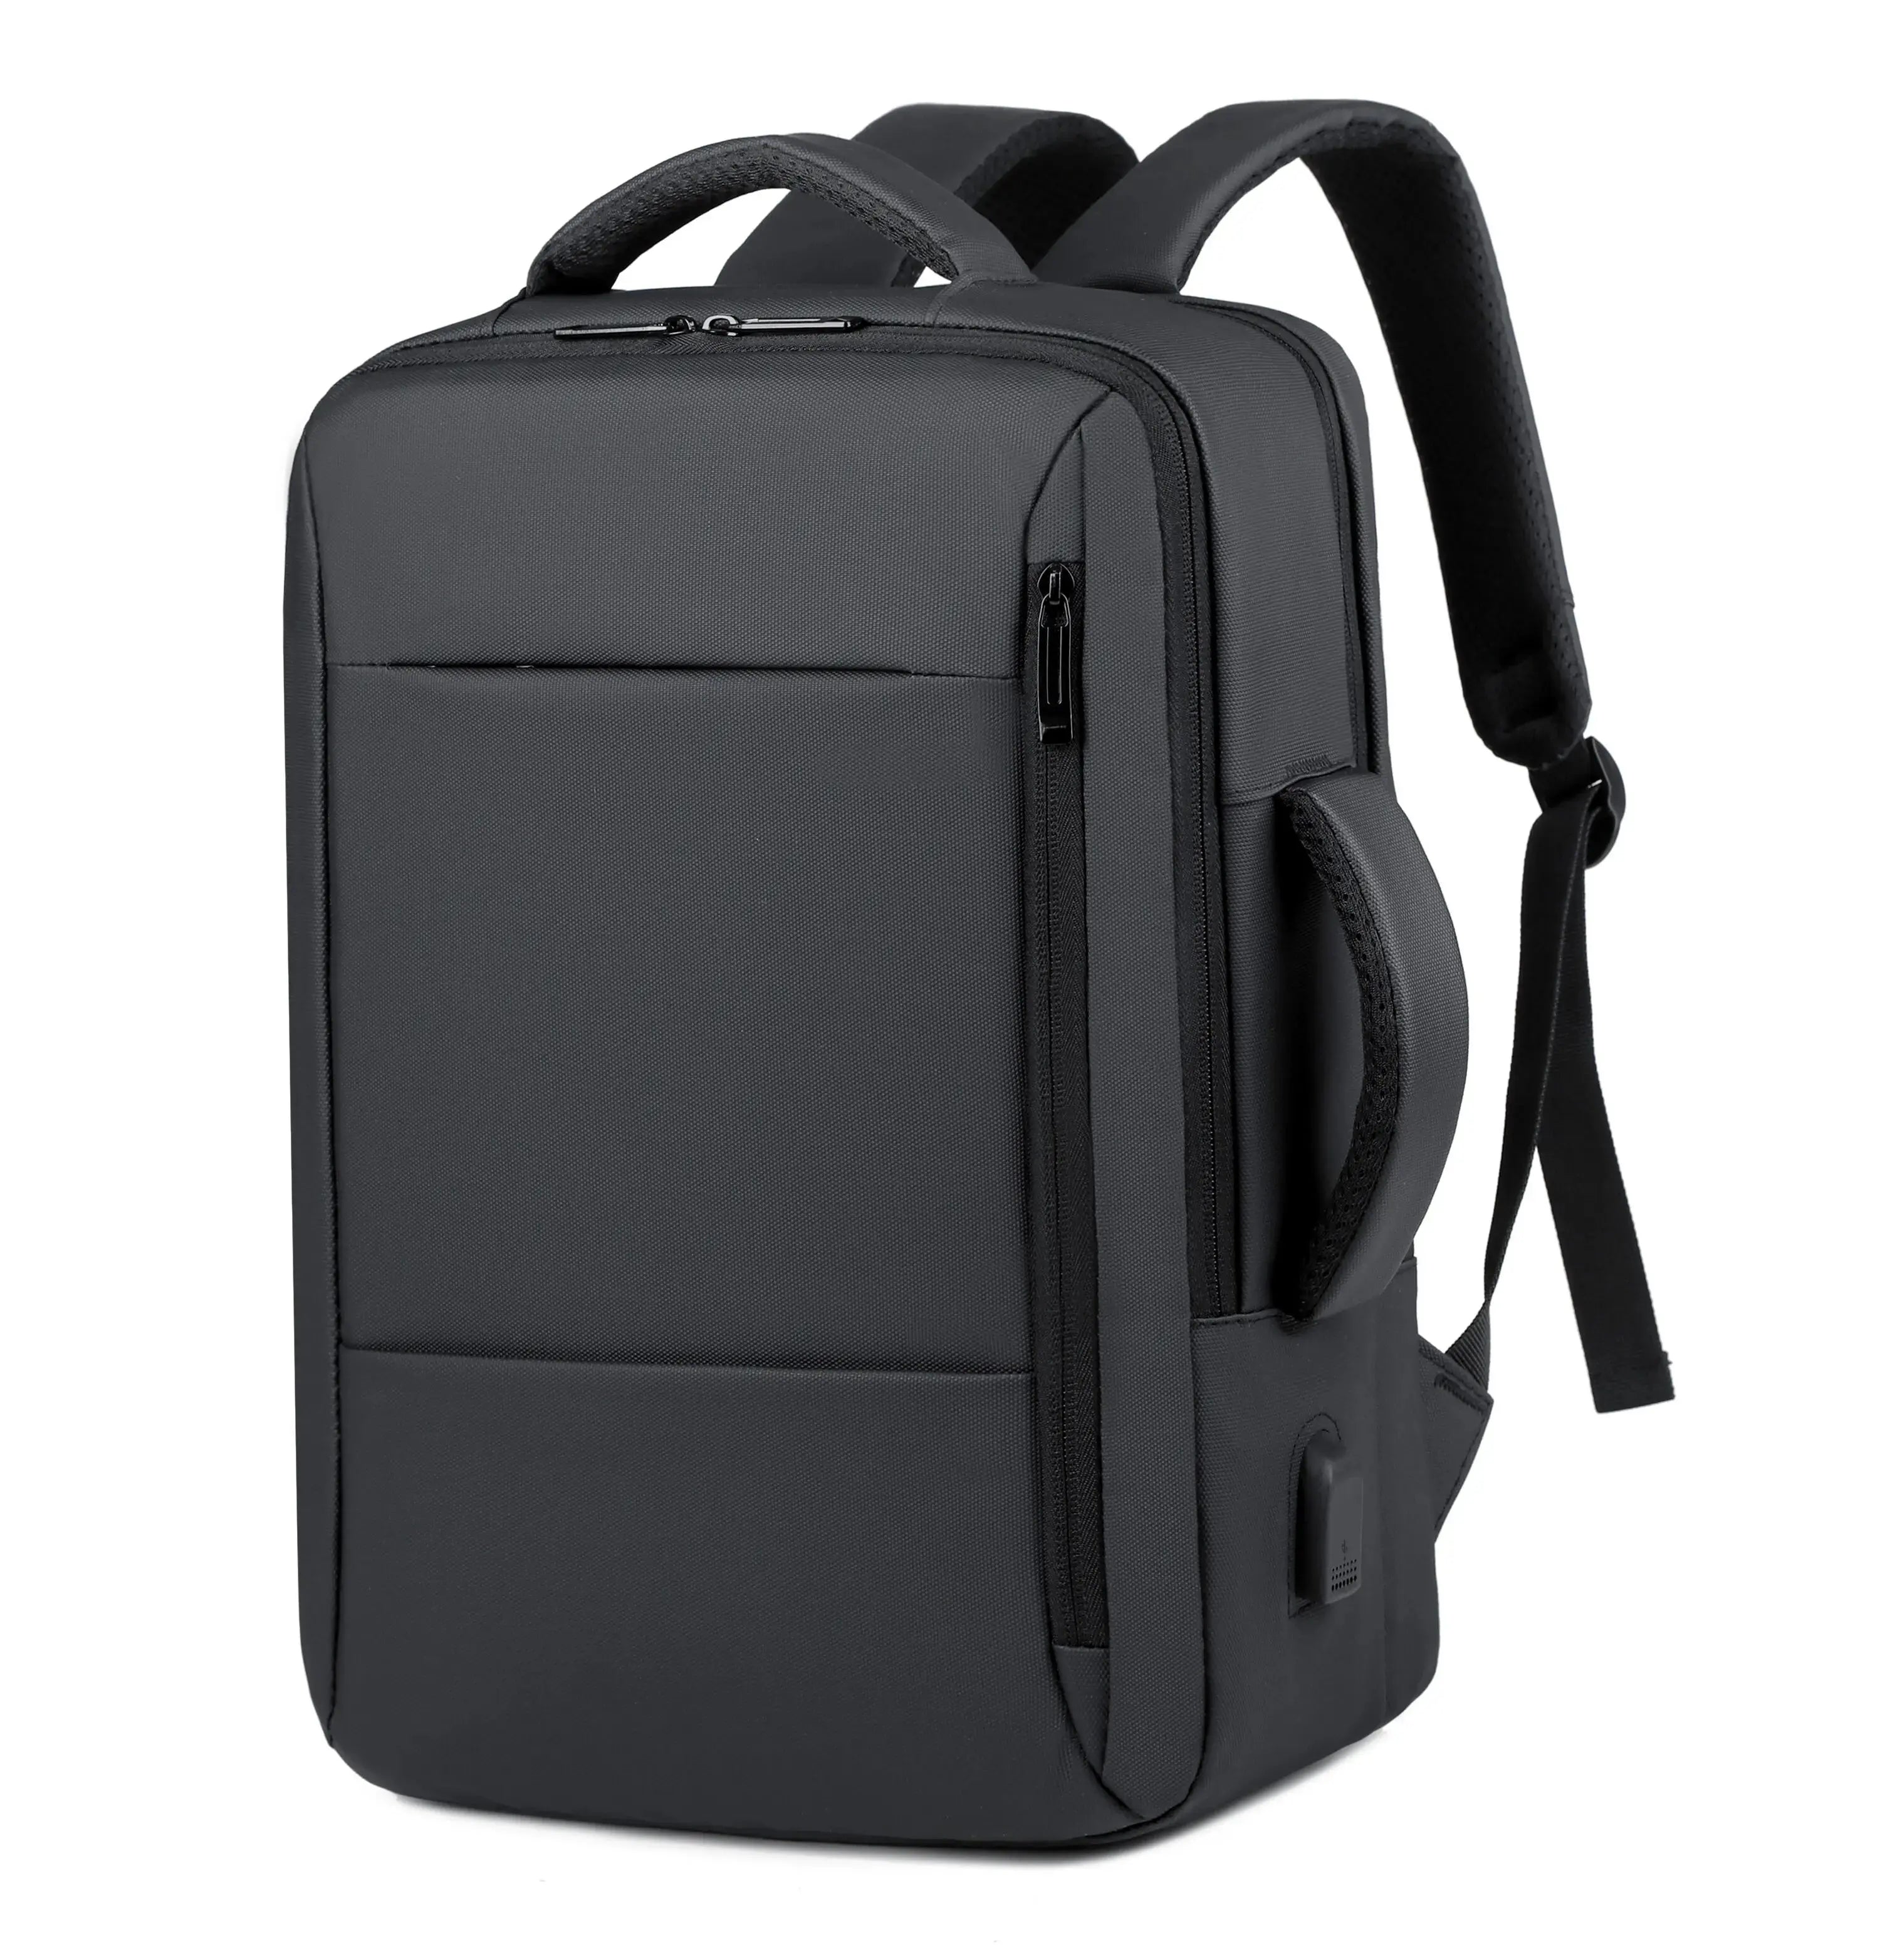 Voyager Elite Travel Backpack